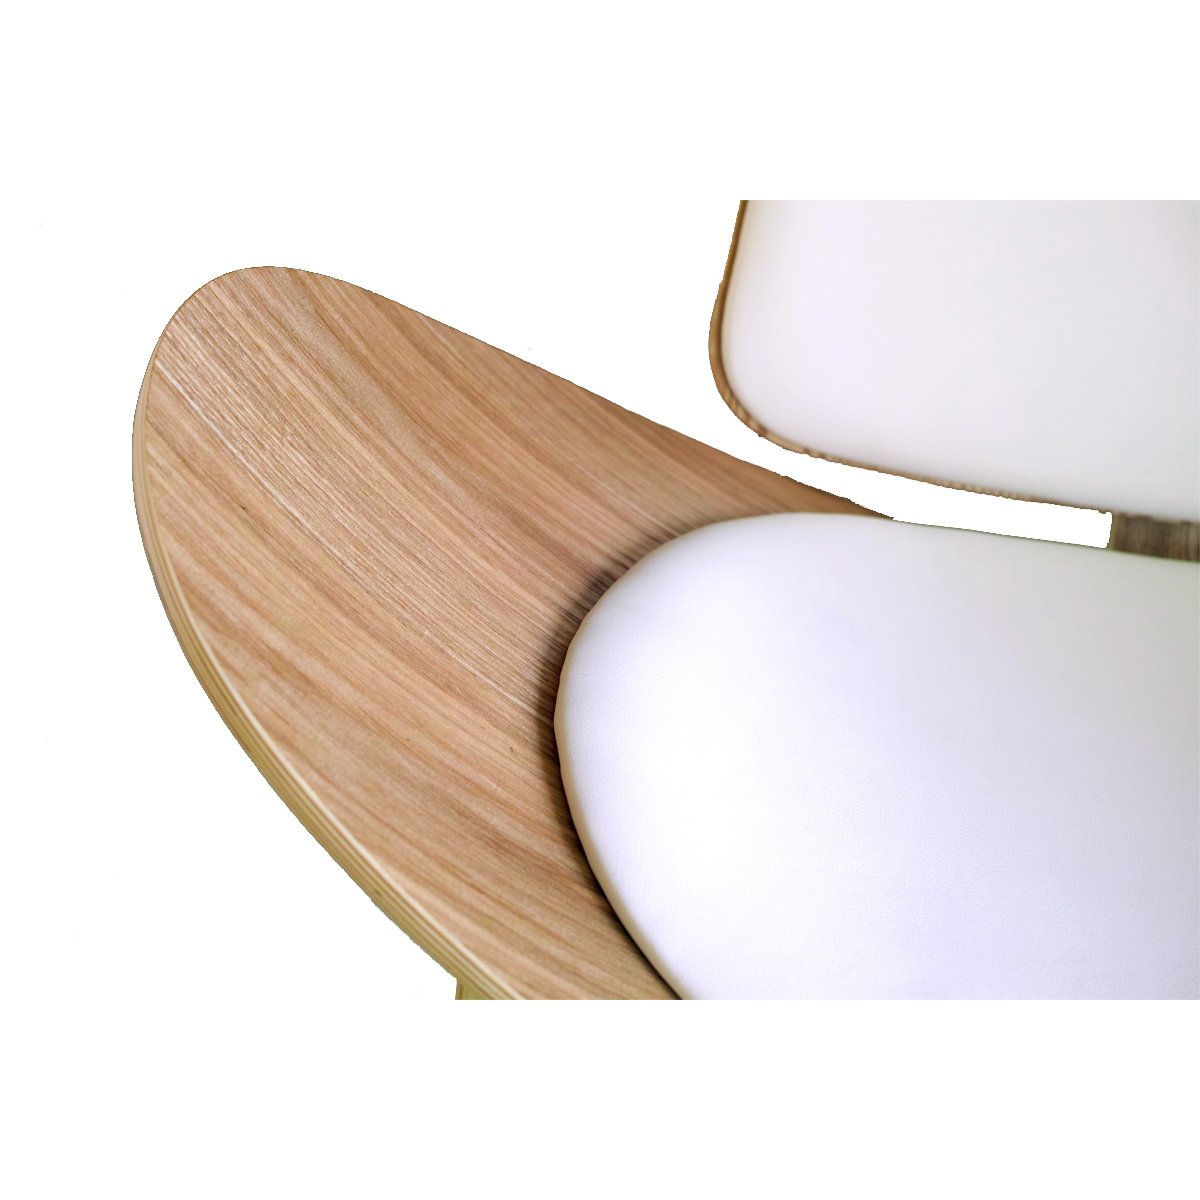 パーソナルチェア リラックスチェア ジェネリック家具 ボートチェア 木製 椅子 チェア デザイナーズ...